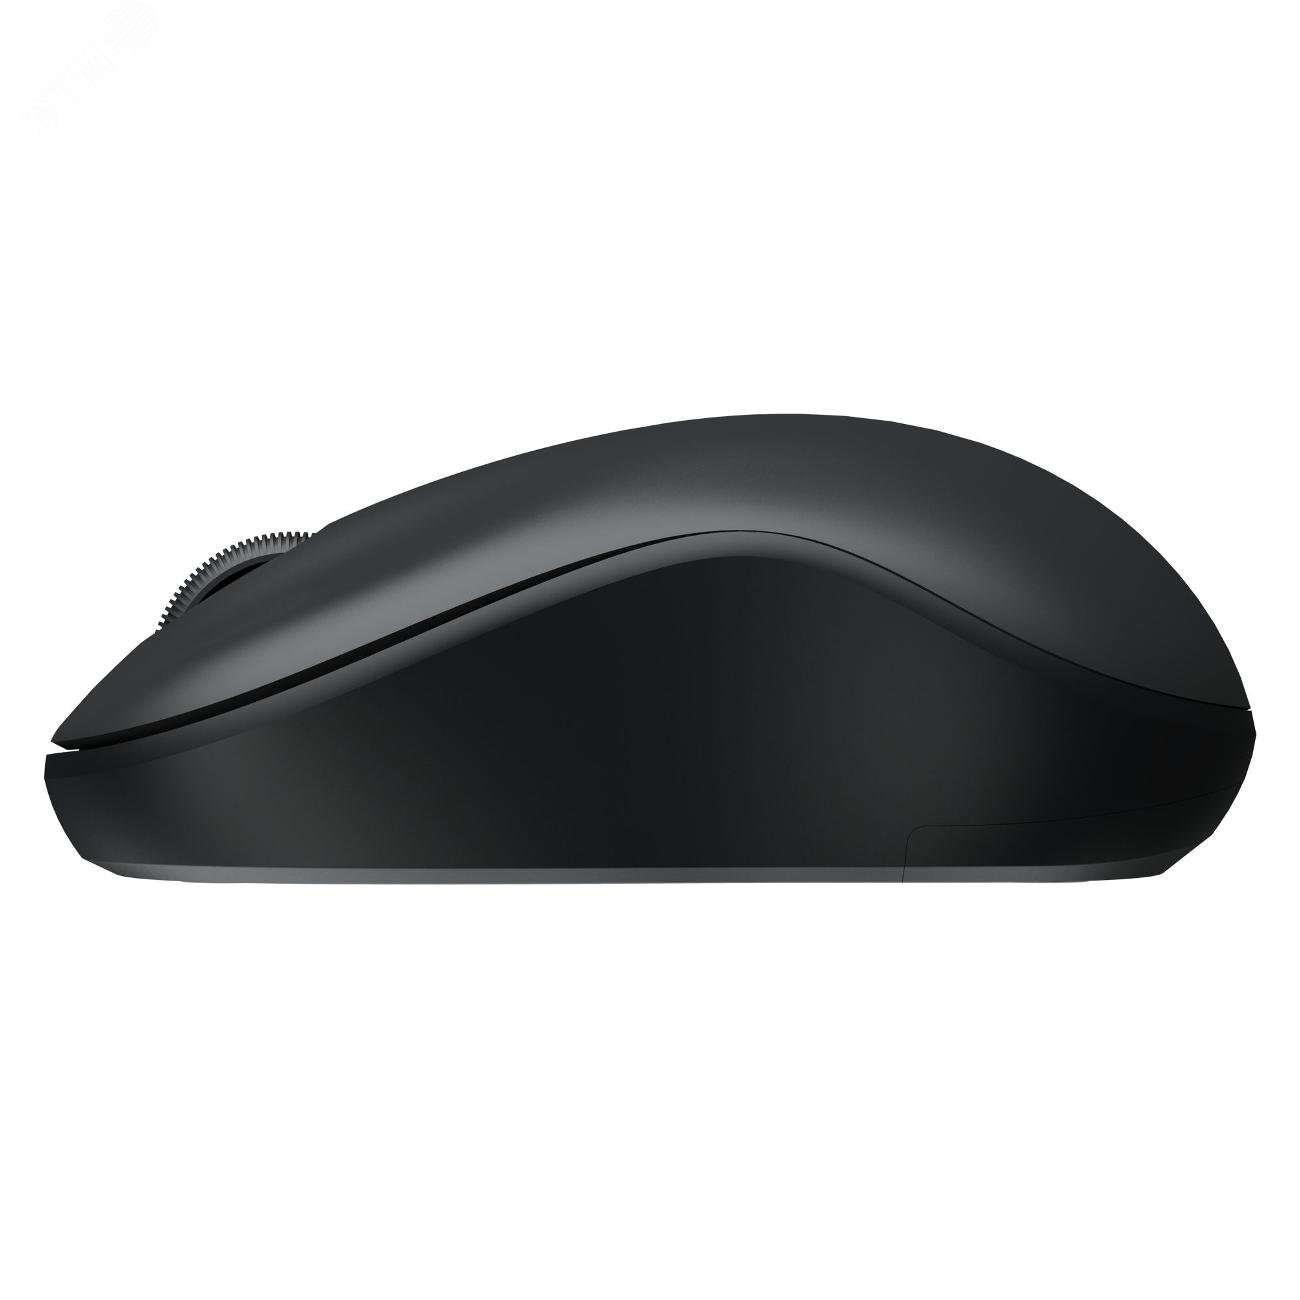 Комплект клавиатура + мышь беспроводной, черный MK188G Black Dareu - превью 6